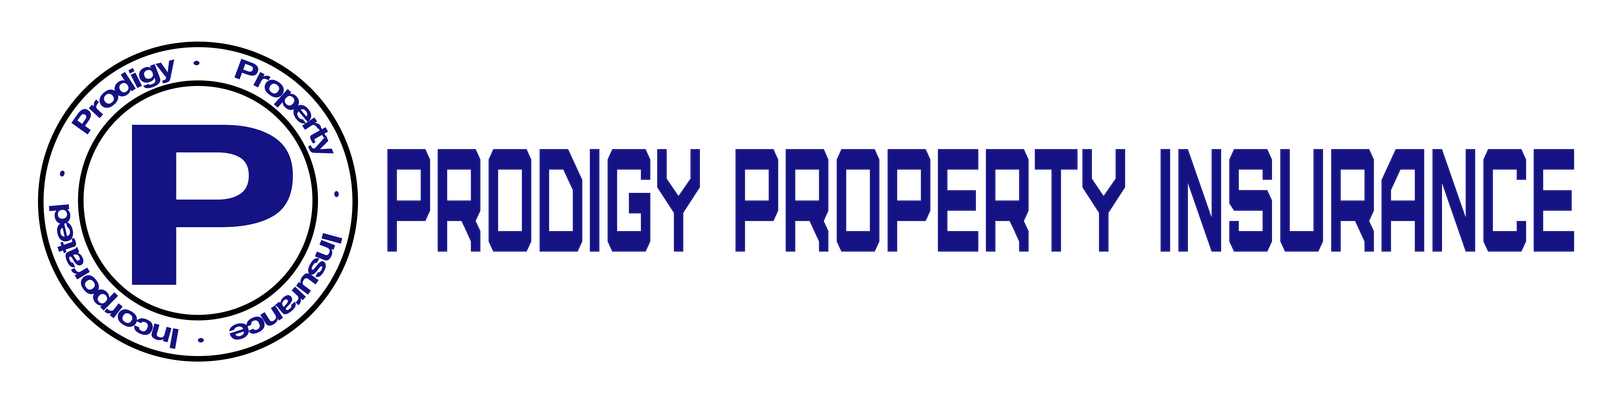 Prodigy Property Insurance